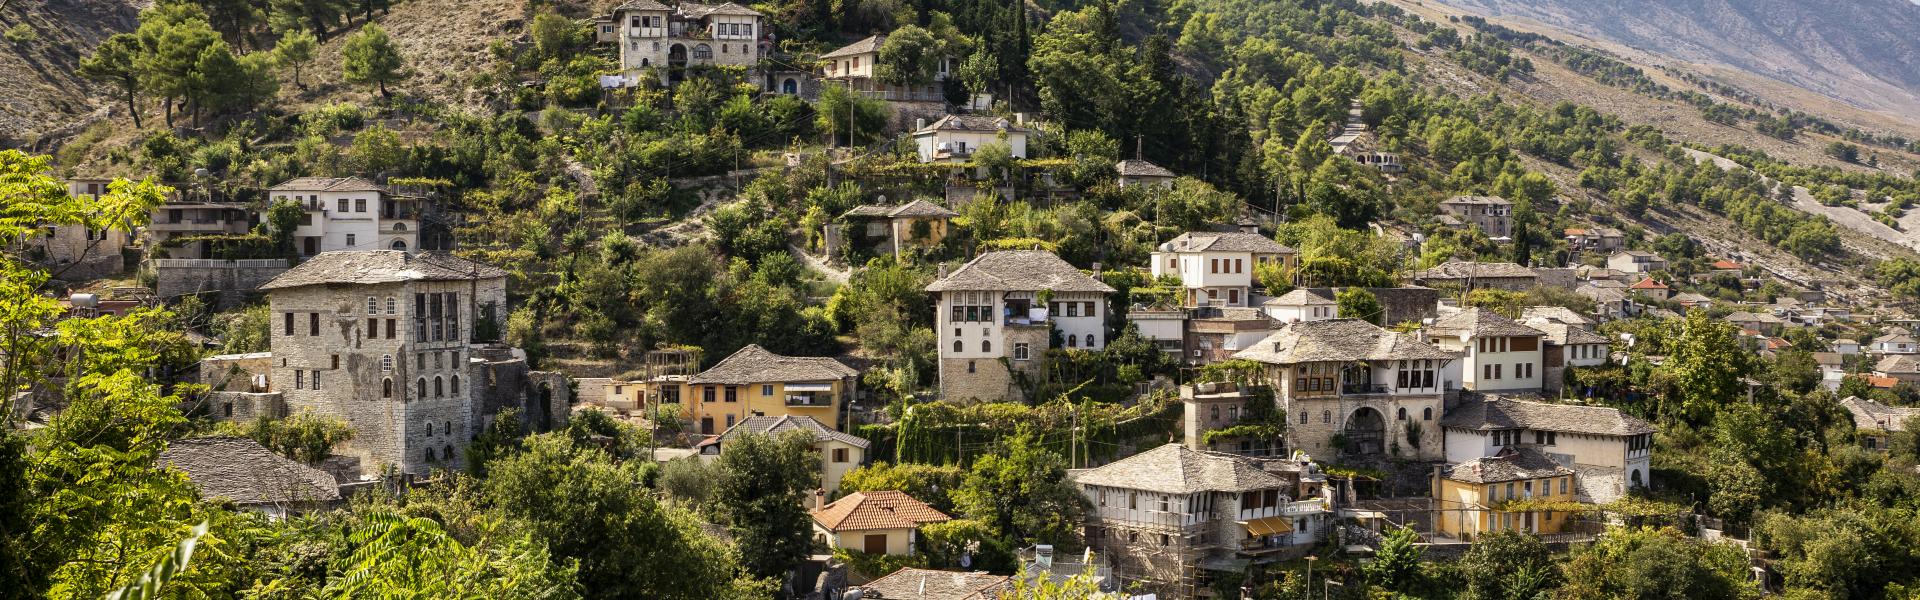 Ferienwohnungen und Ferienhäuser in Albanien - Wimdu